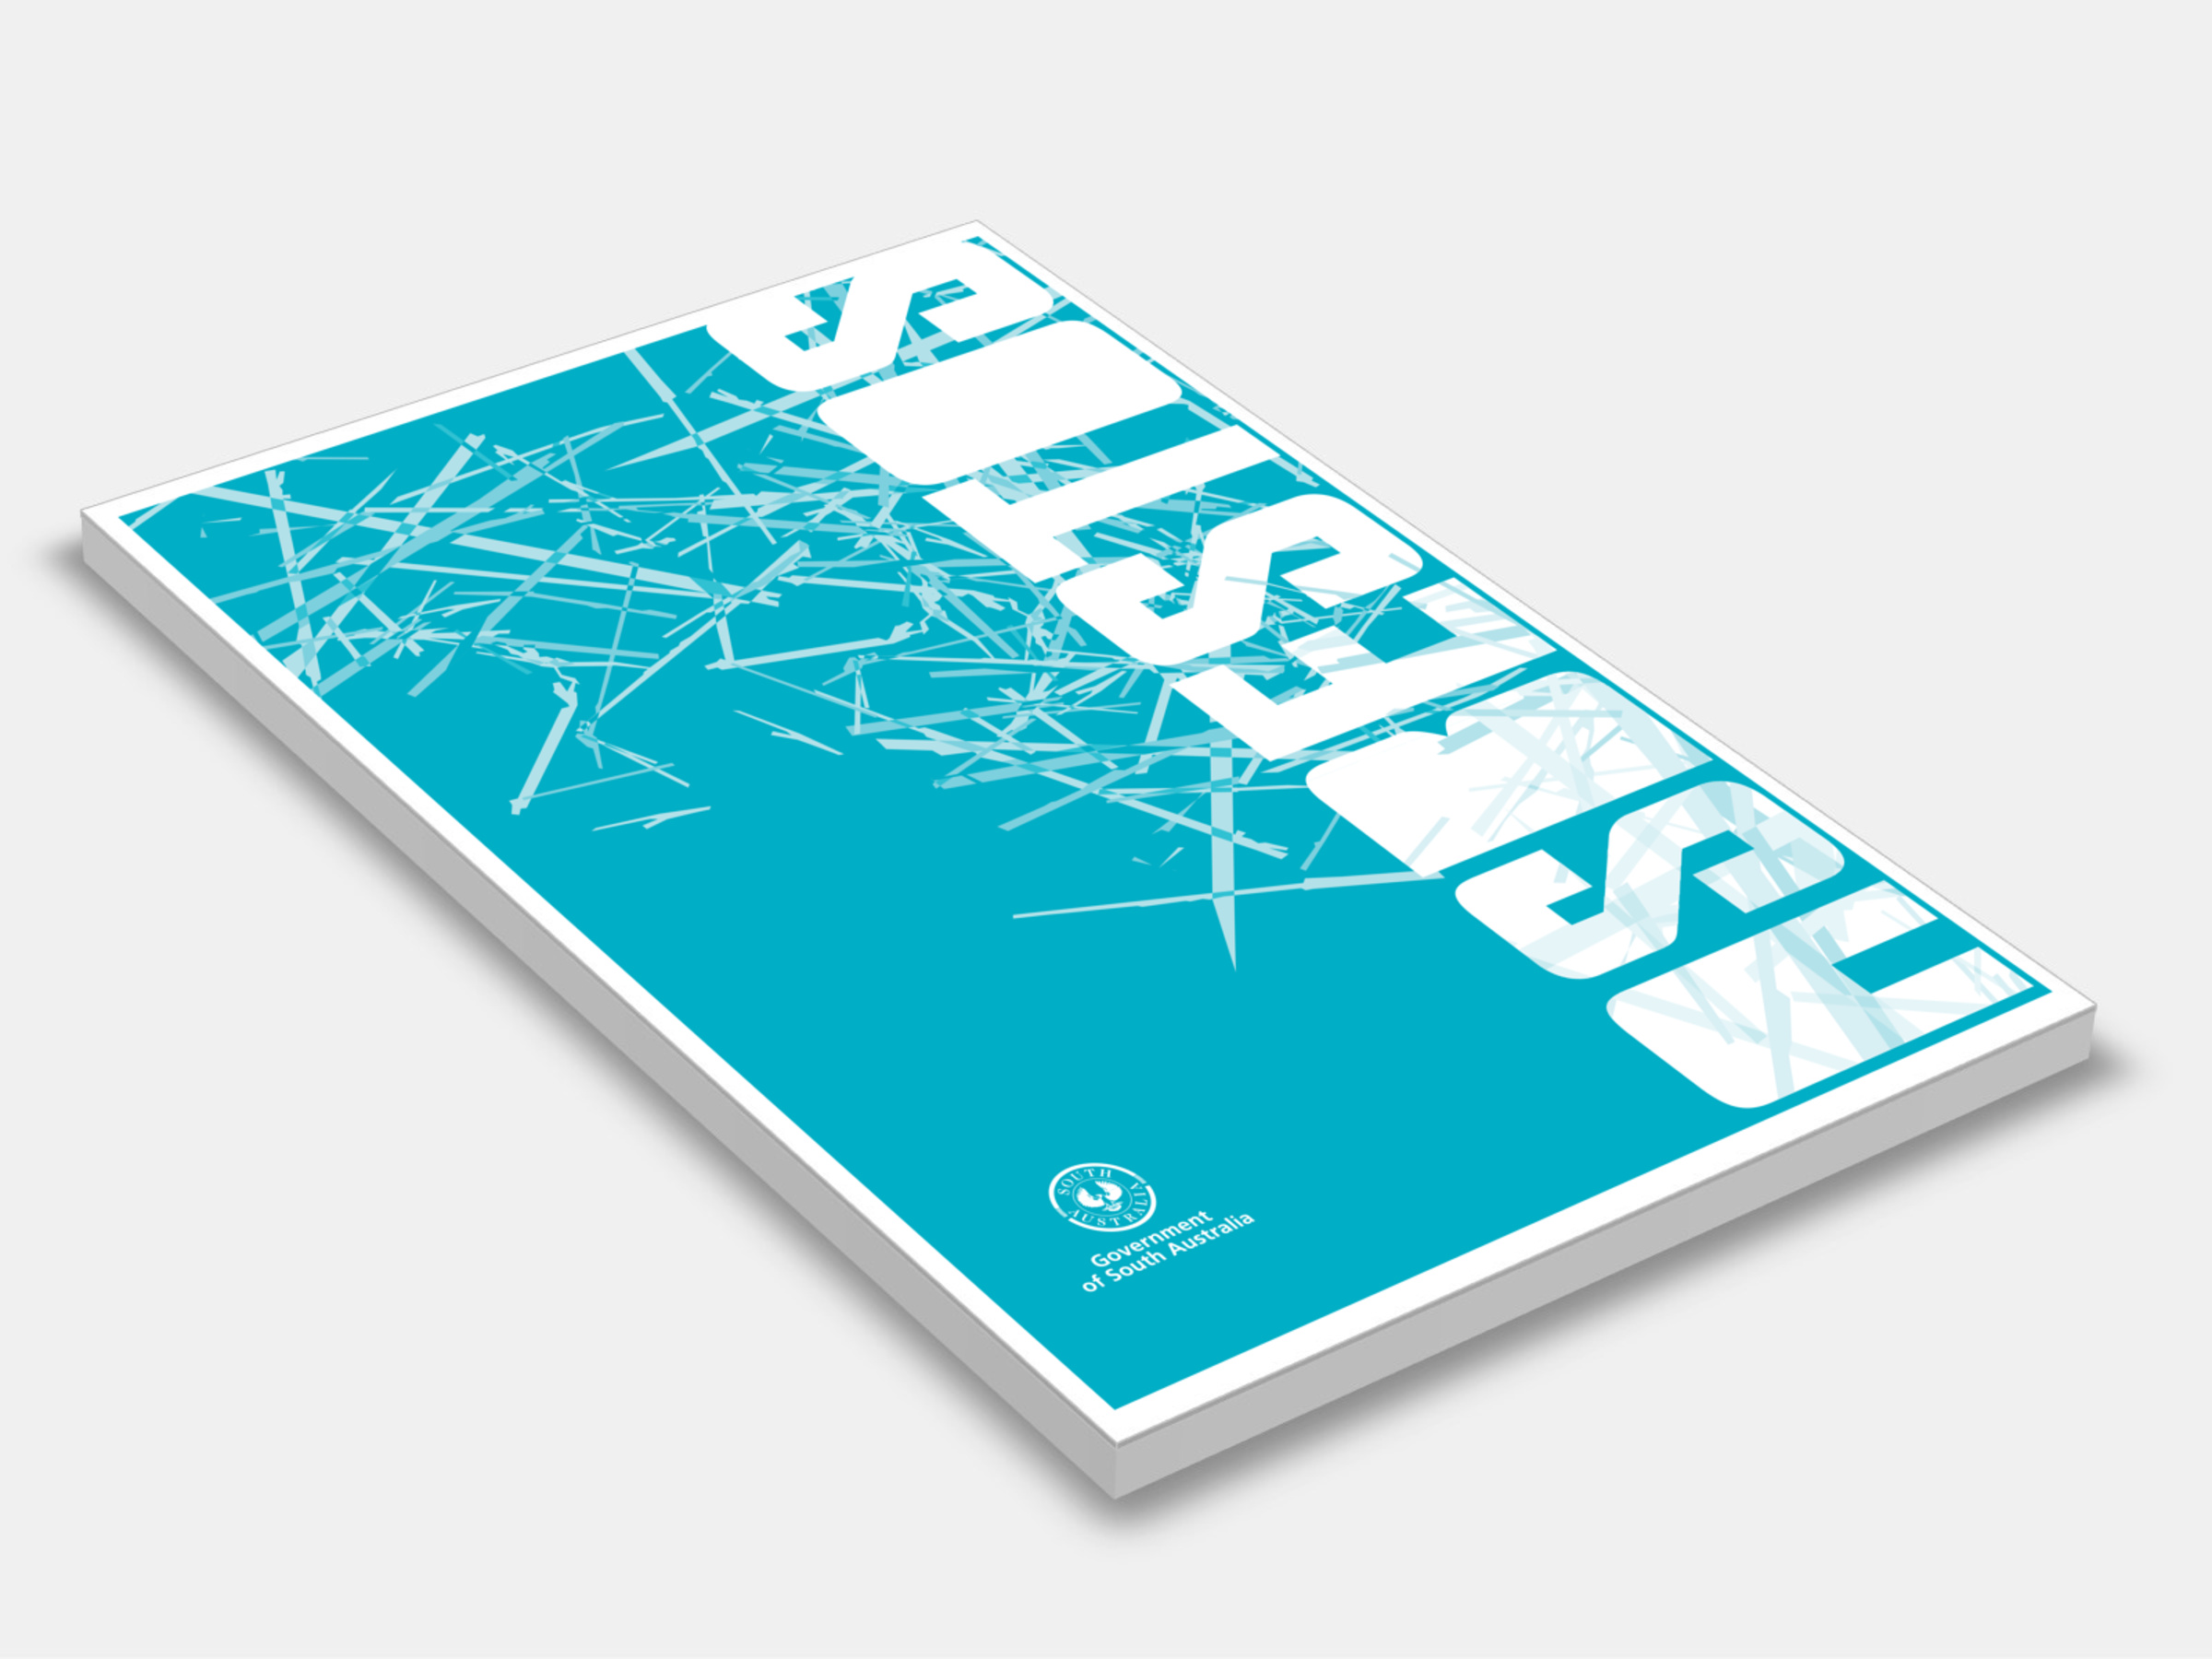 asbestos brochure 2014 cover